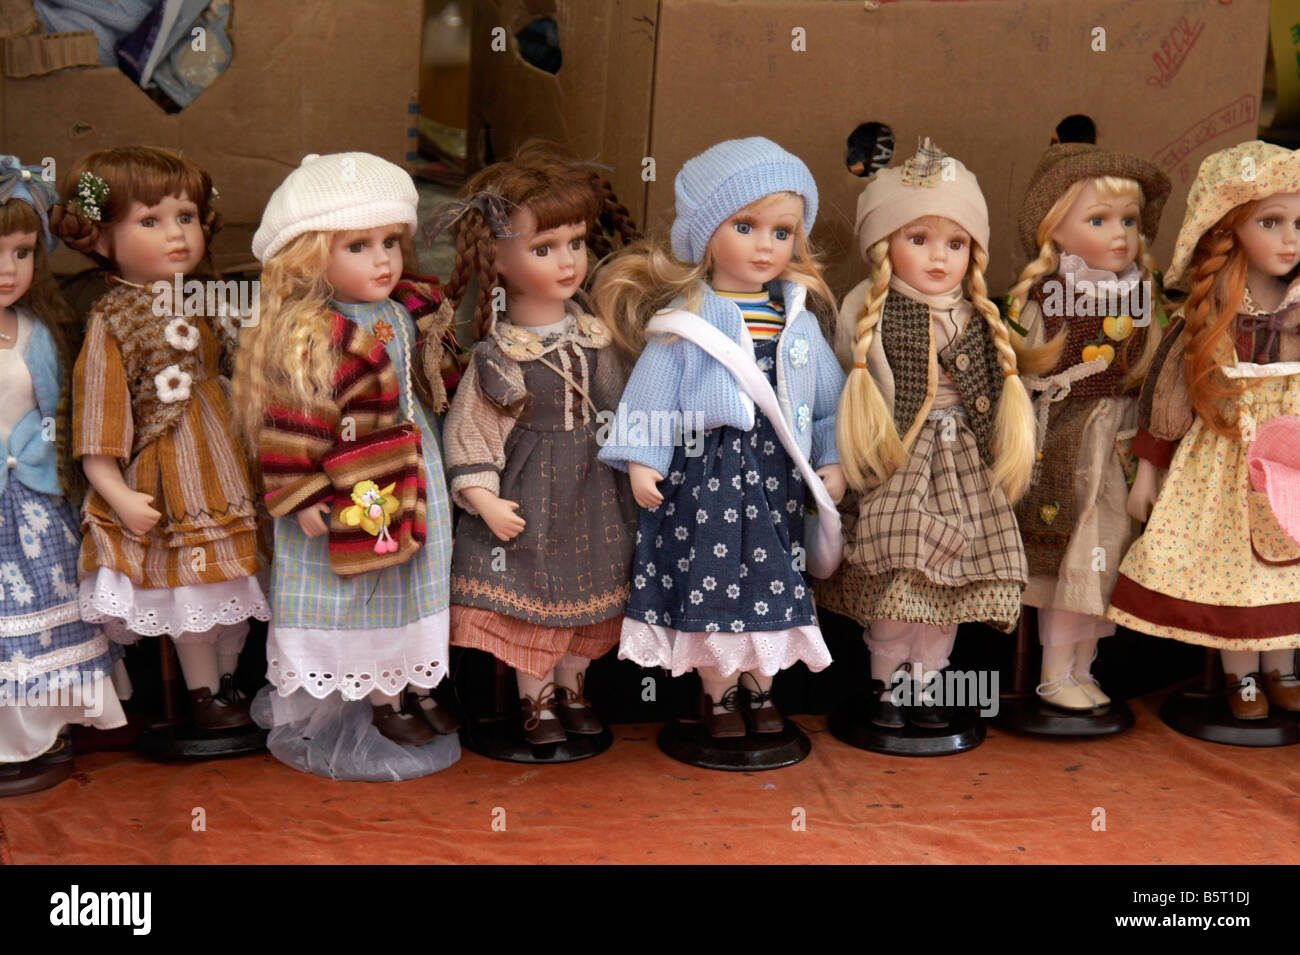 Bambole di praga immagini e fotografie stock ad alta risoluzione - Alamy